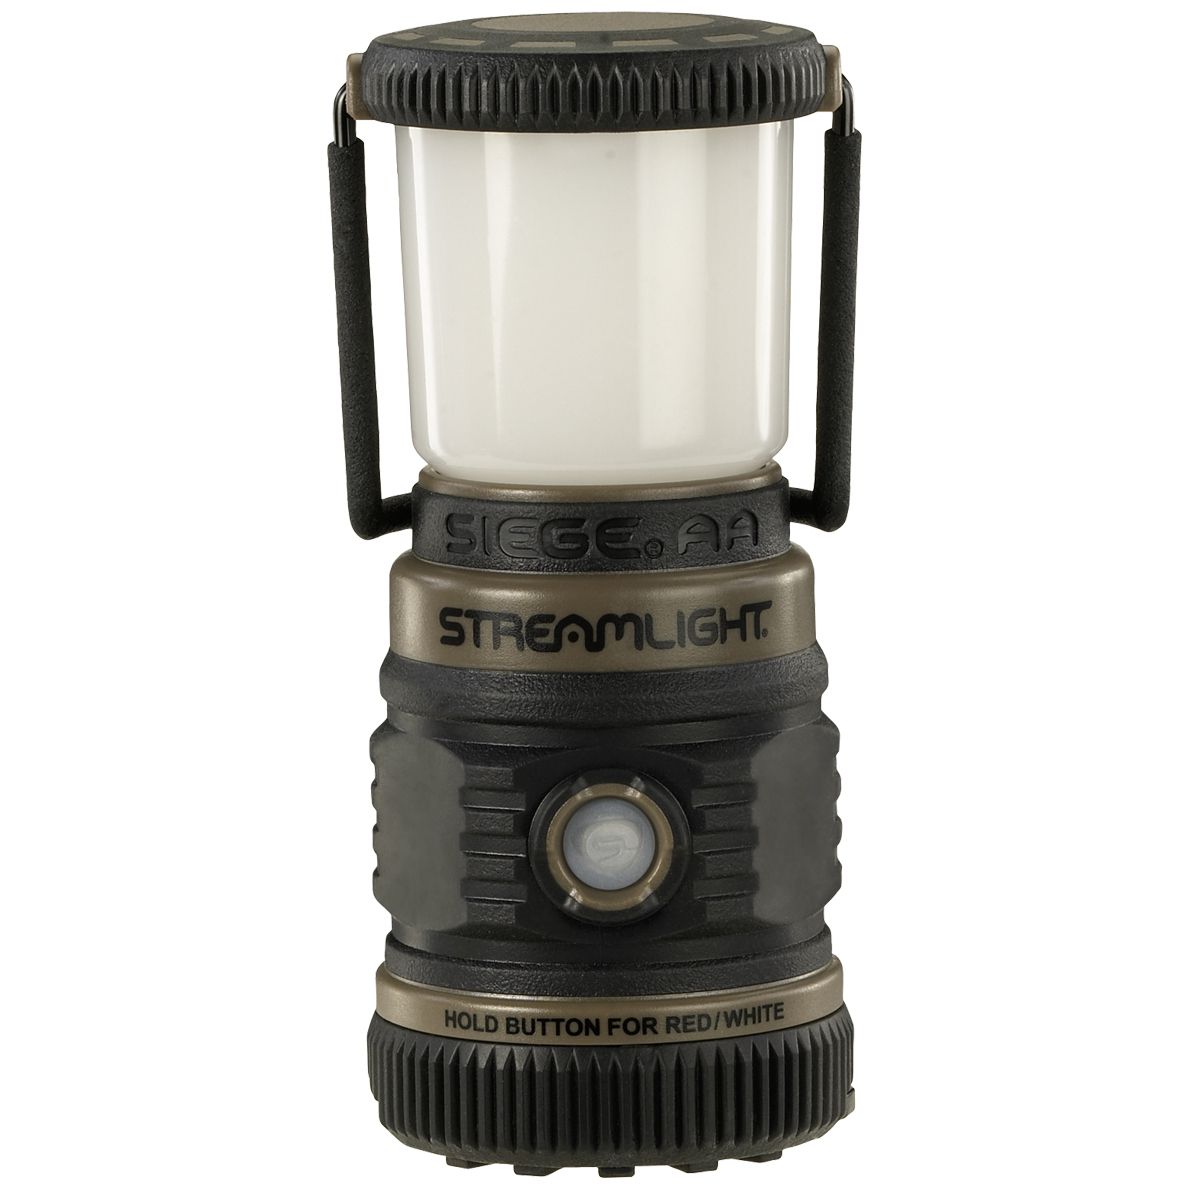 Streamlight Siege AA Lampe - extrem robuste & wasserfeste Outdoor-Laterne - taktische Leuchte mit 200 Lumen - Braun